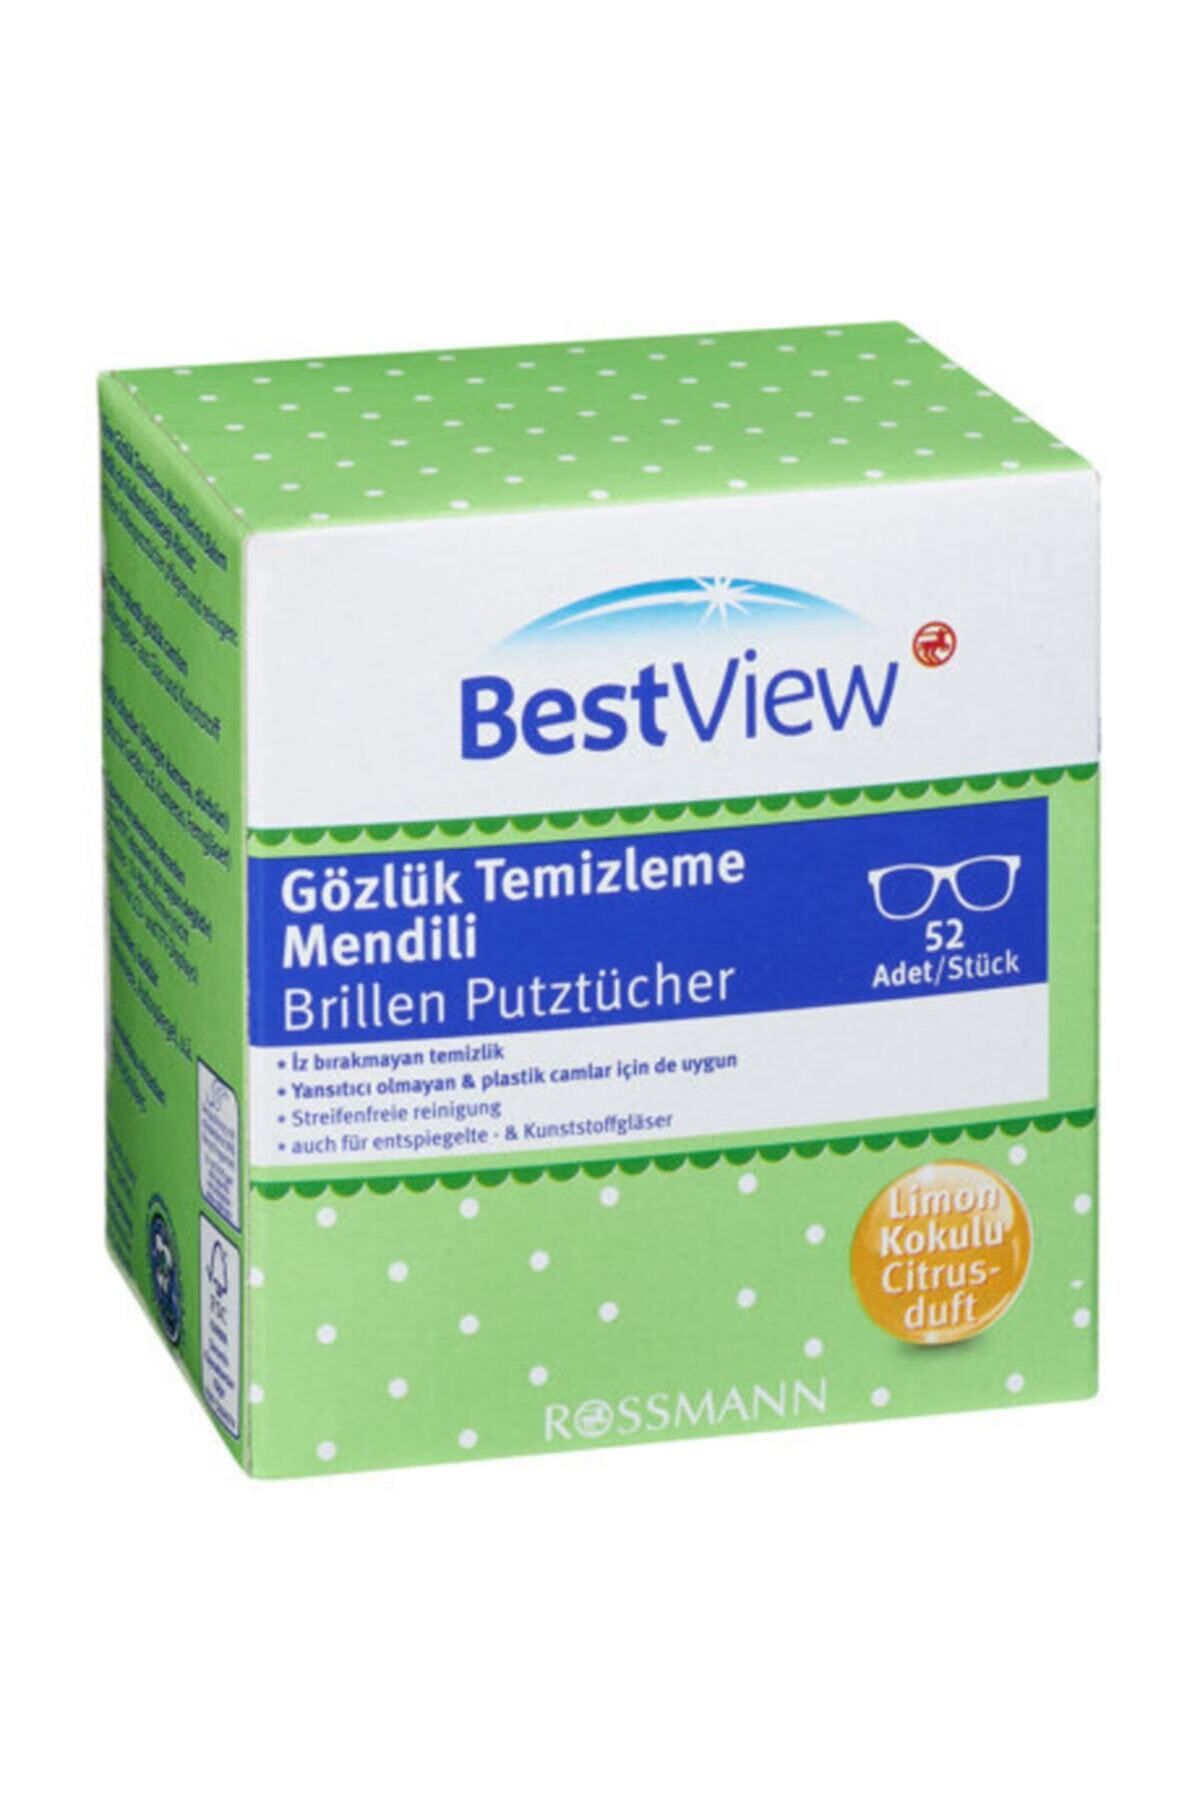 Bestview Gözlük Temizleme Mendili 52 Adet